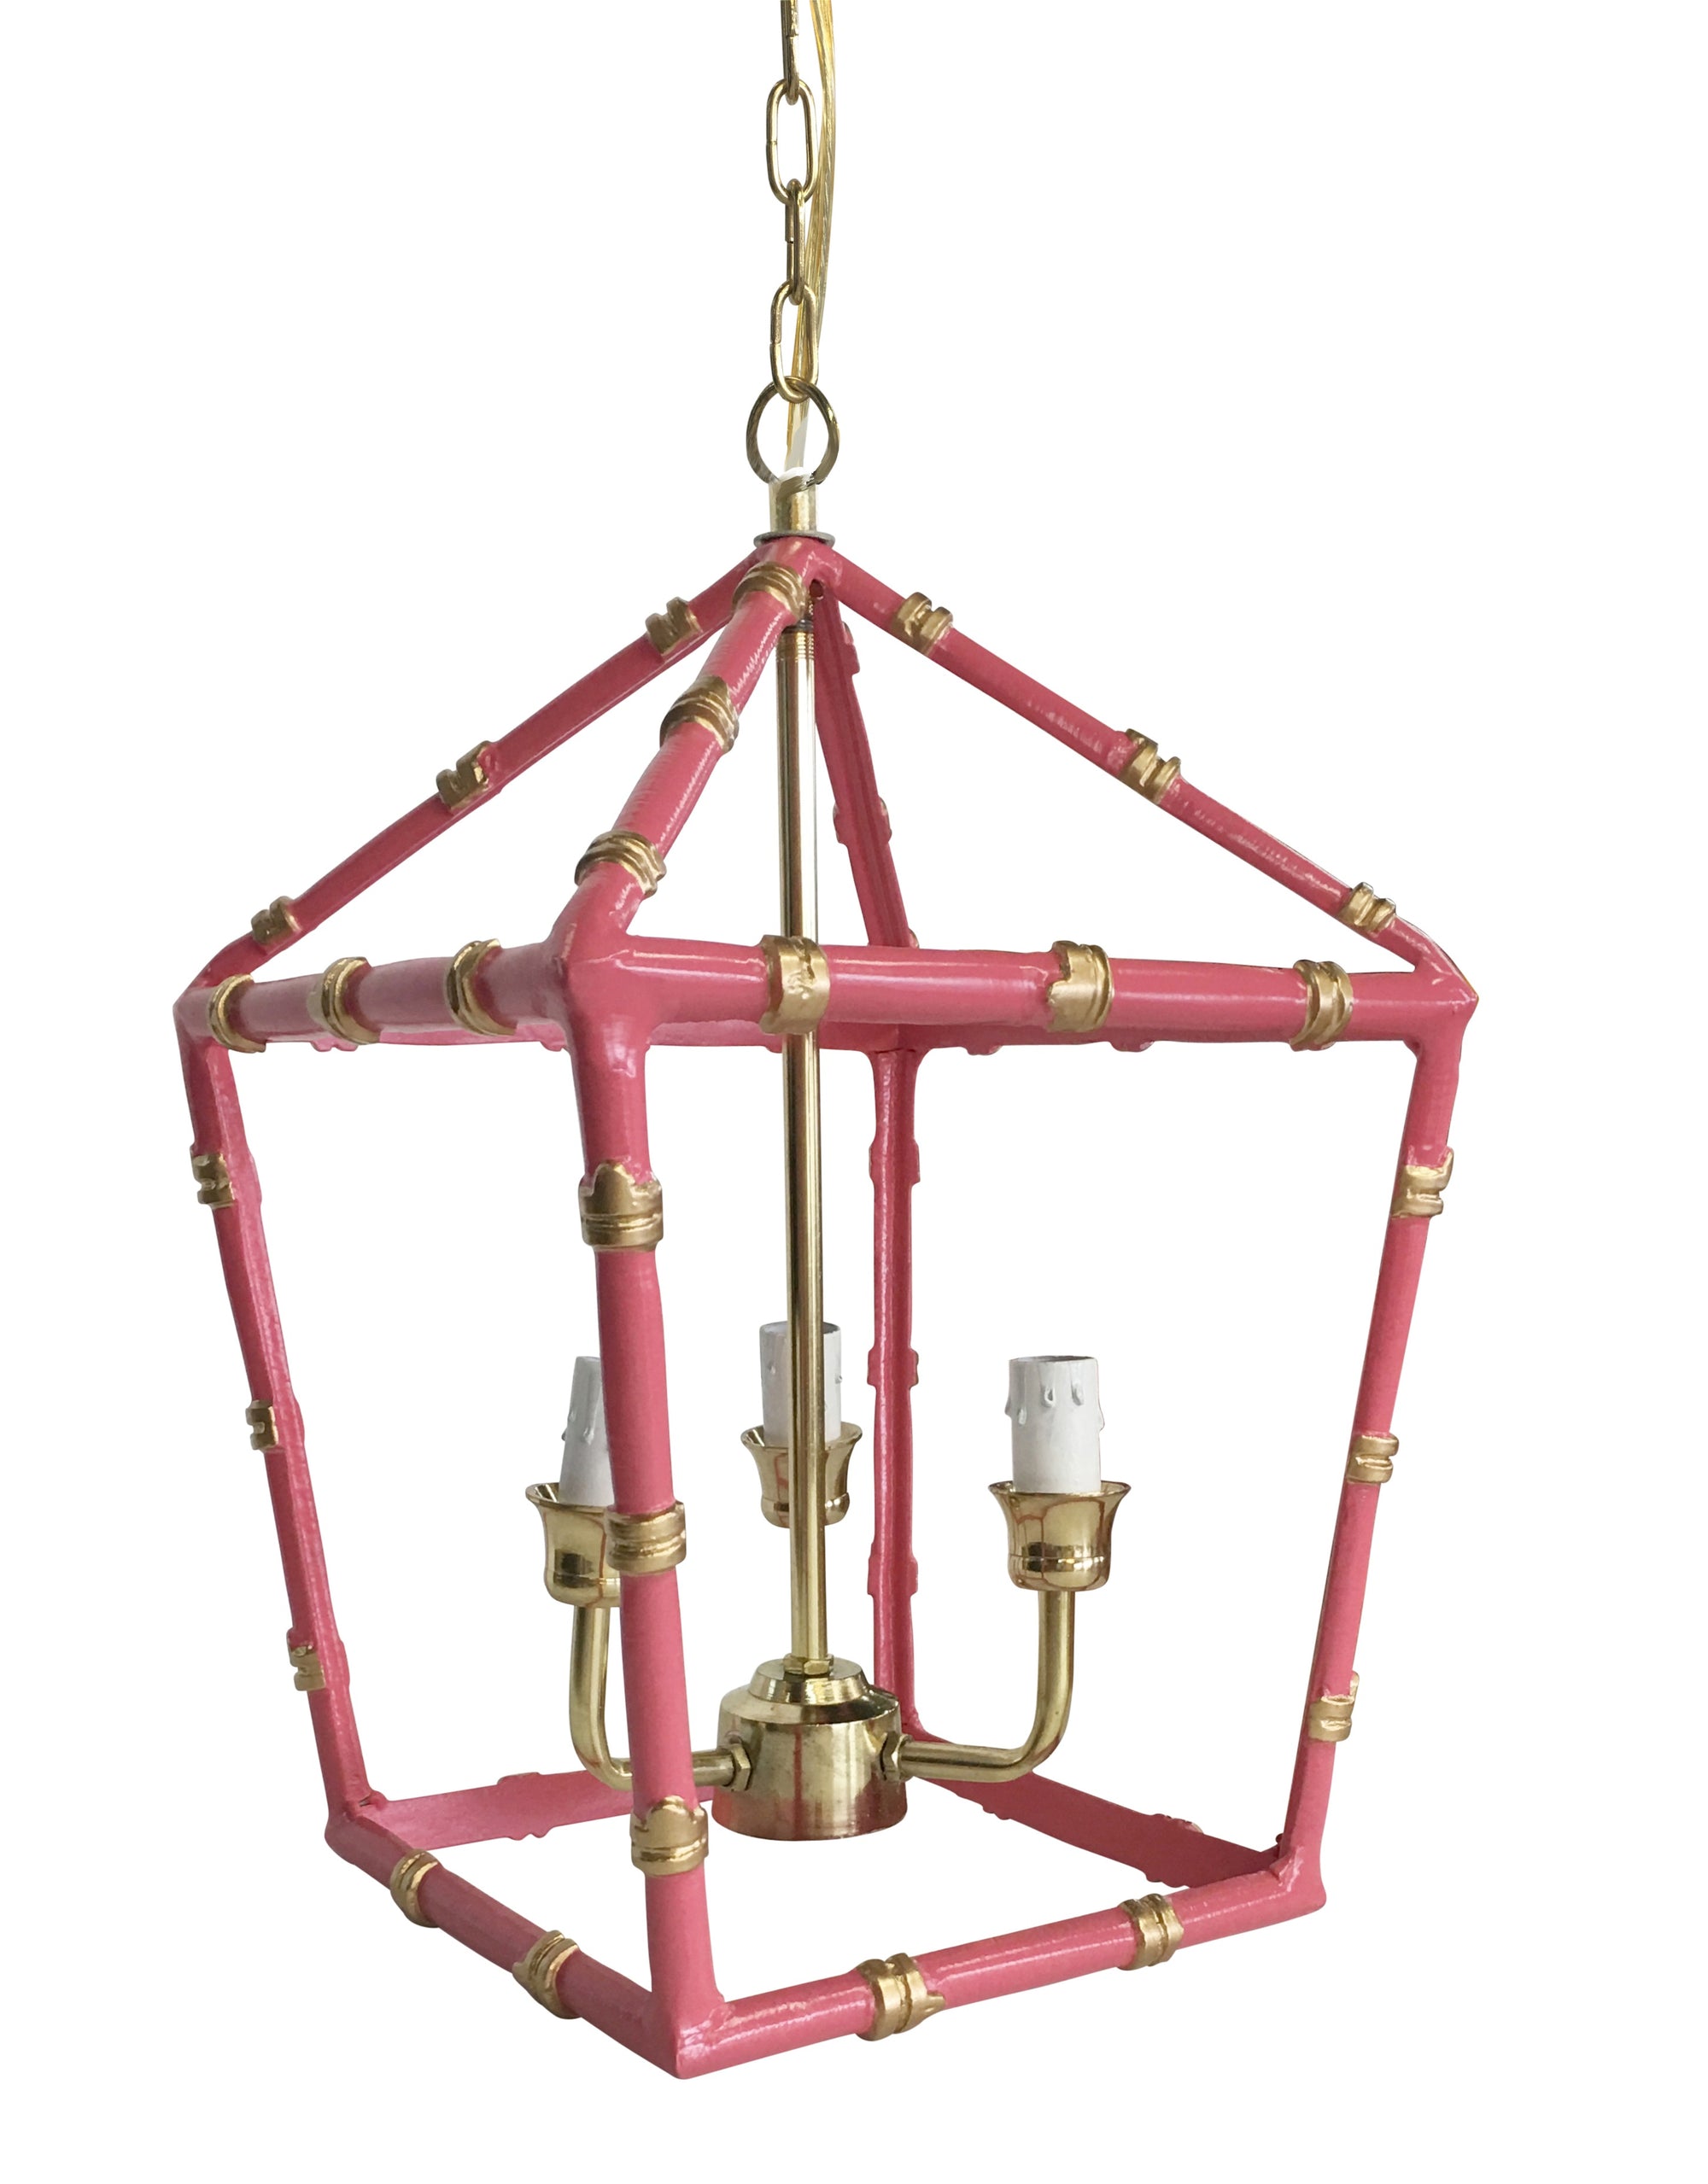 Dana Gibson Bamboo Lantern in Pink, Small